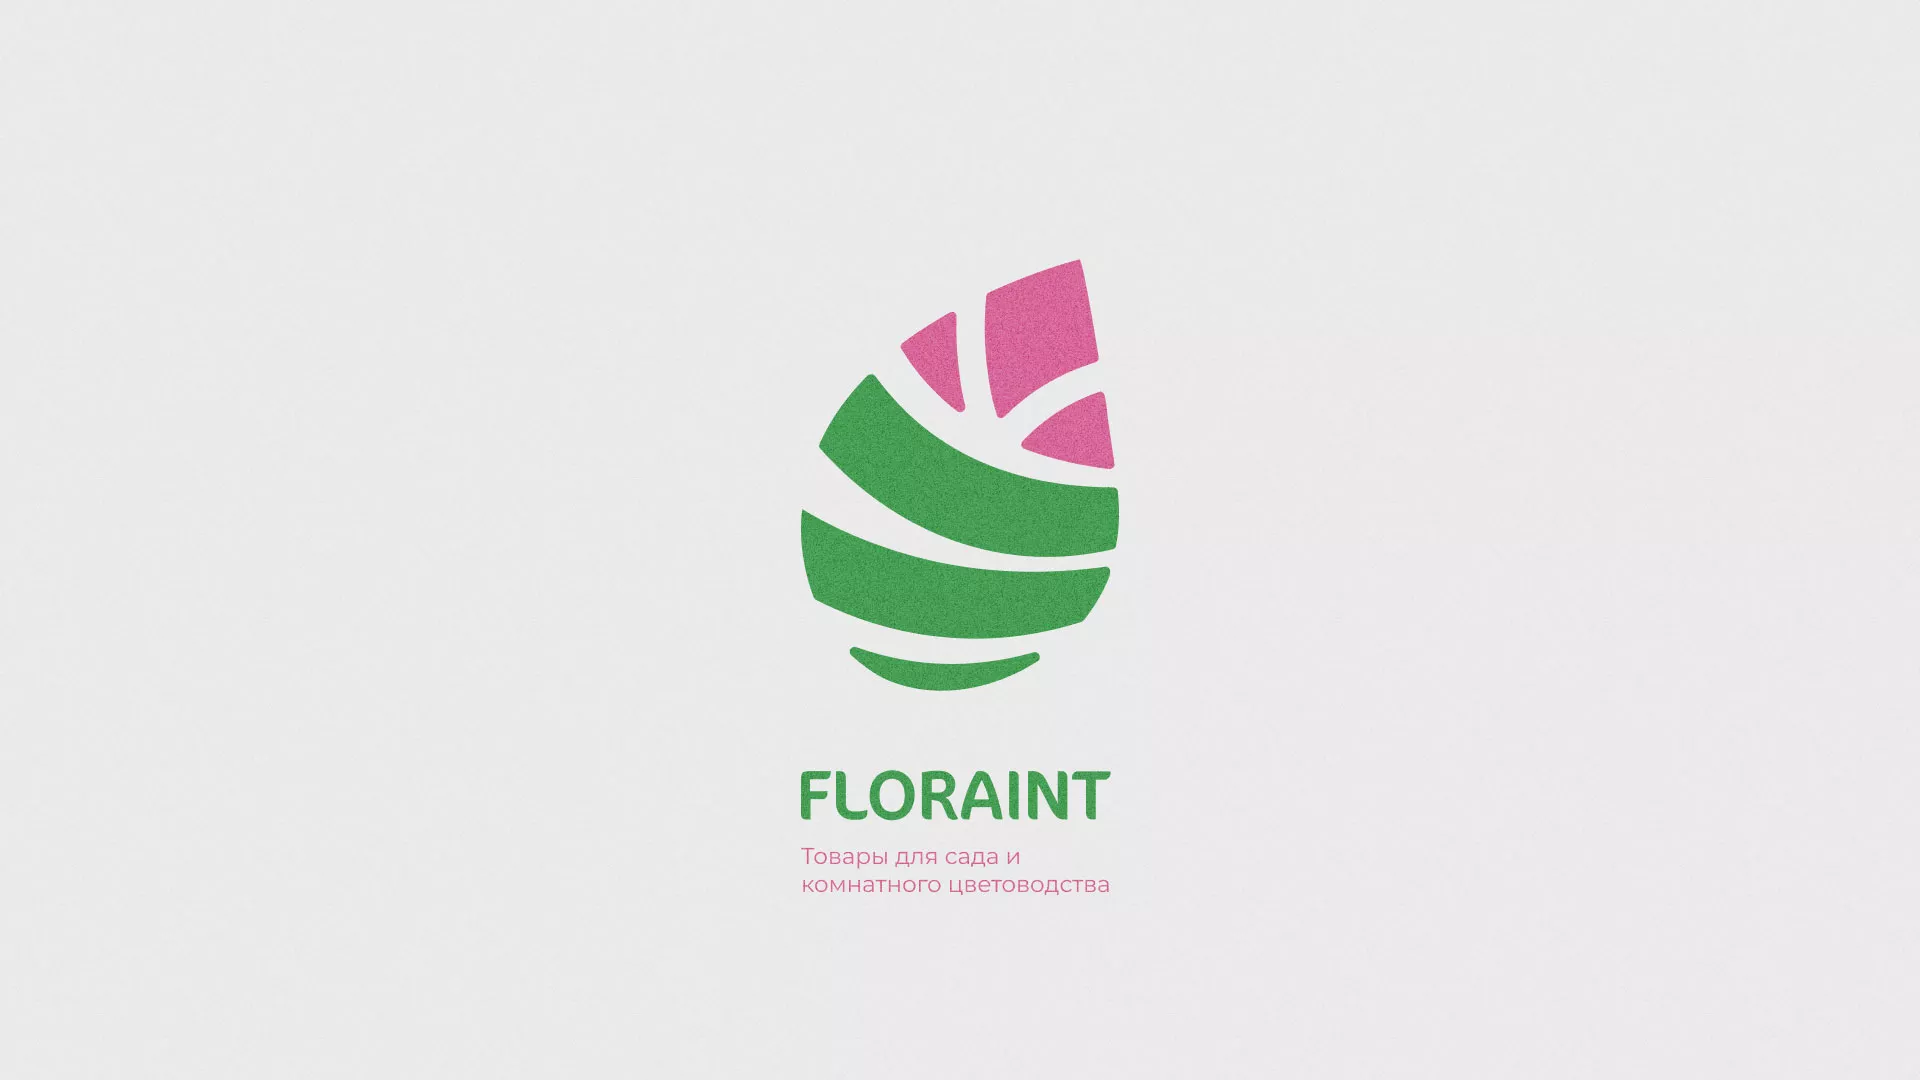 Разработка оформления профиля Instagram для магазина «Floraint» в Инсаре